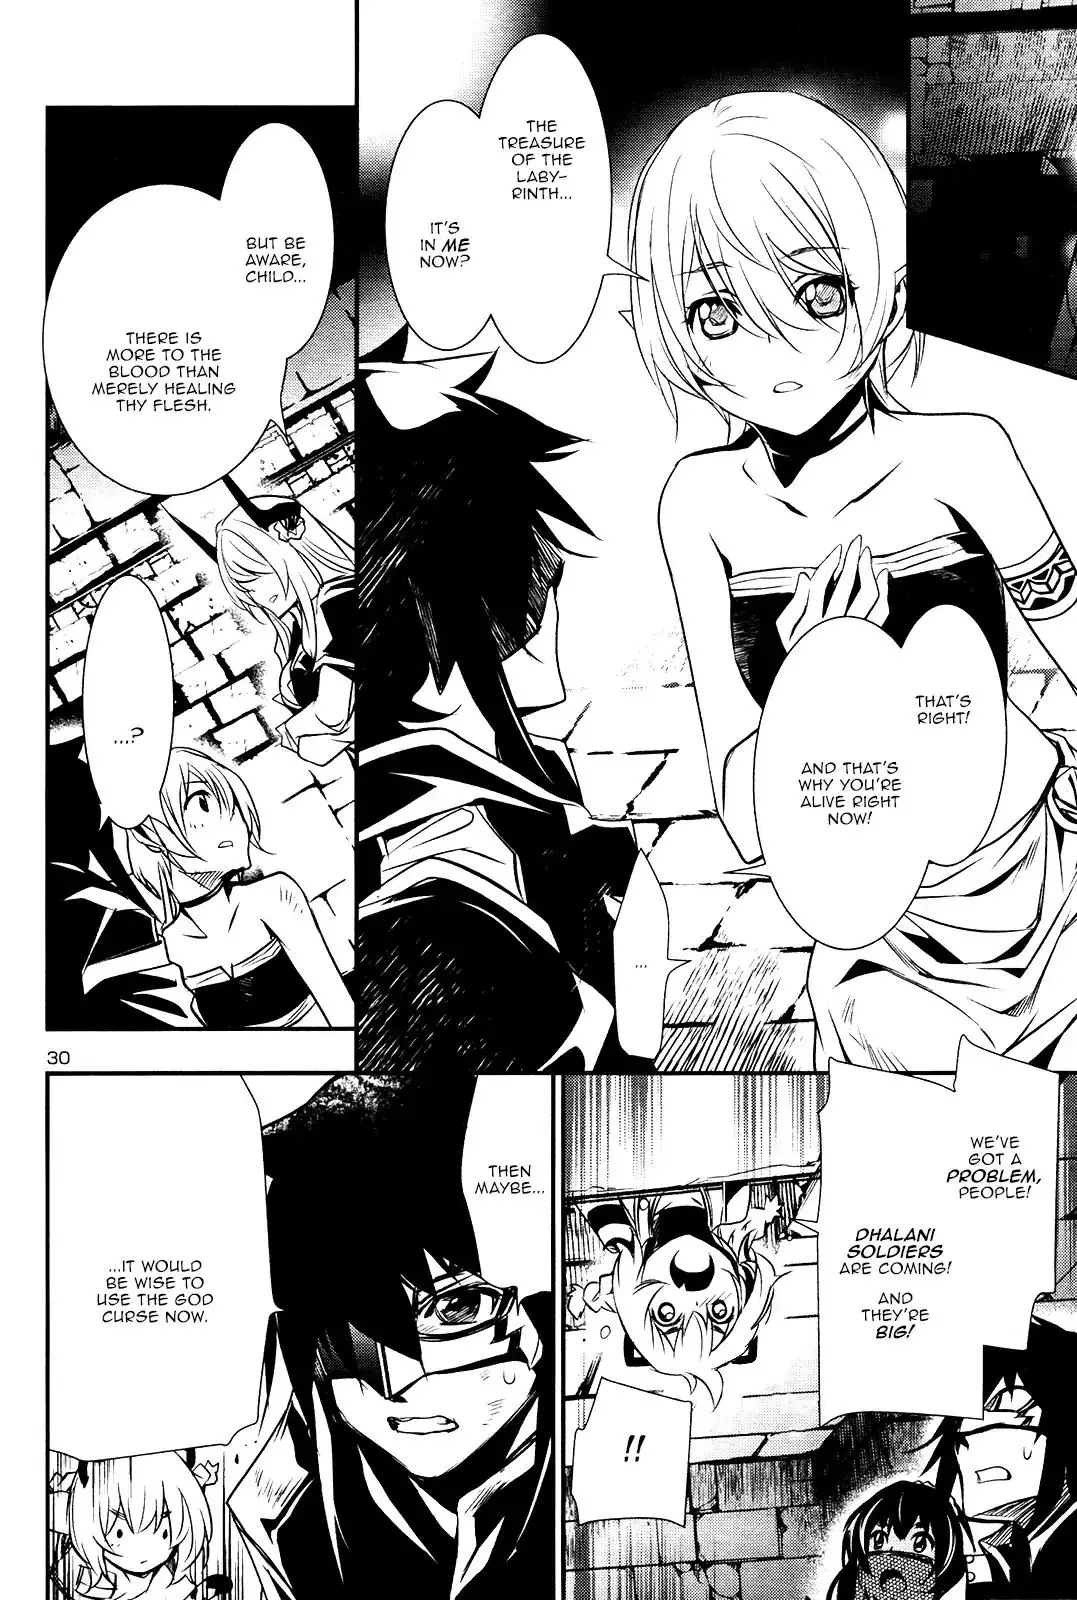 Shinju no Nectar - 19 page 29